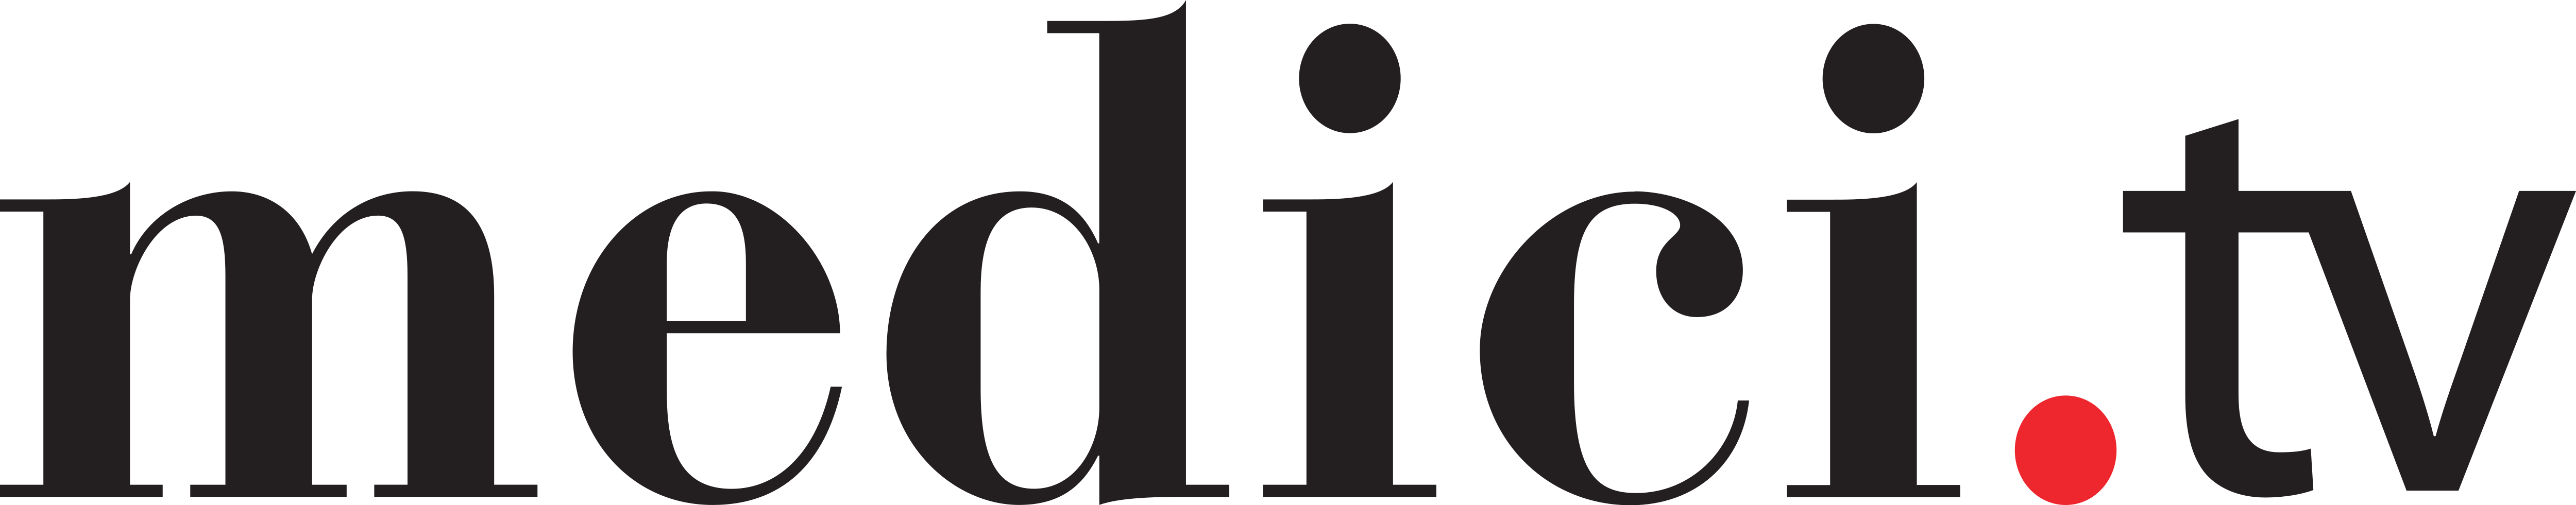 logo-medici-tv-png (2)